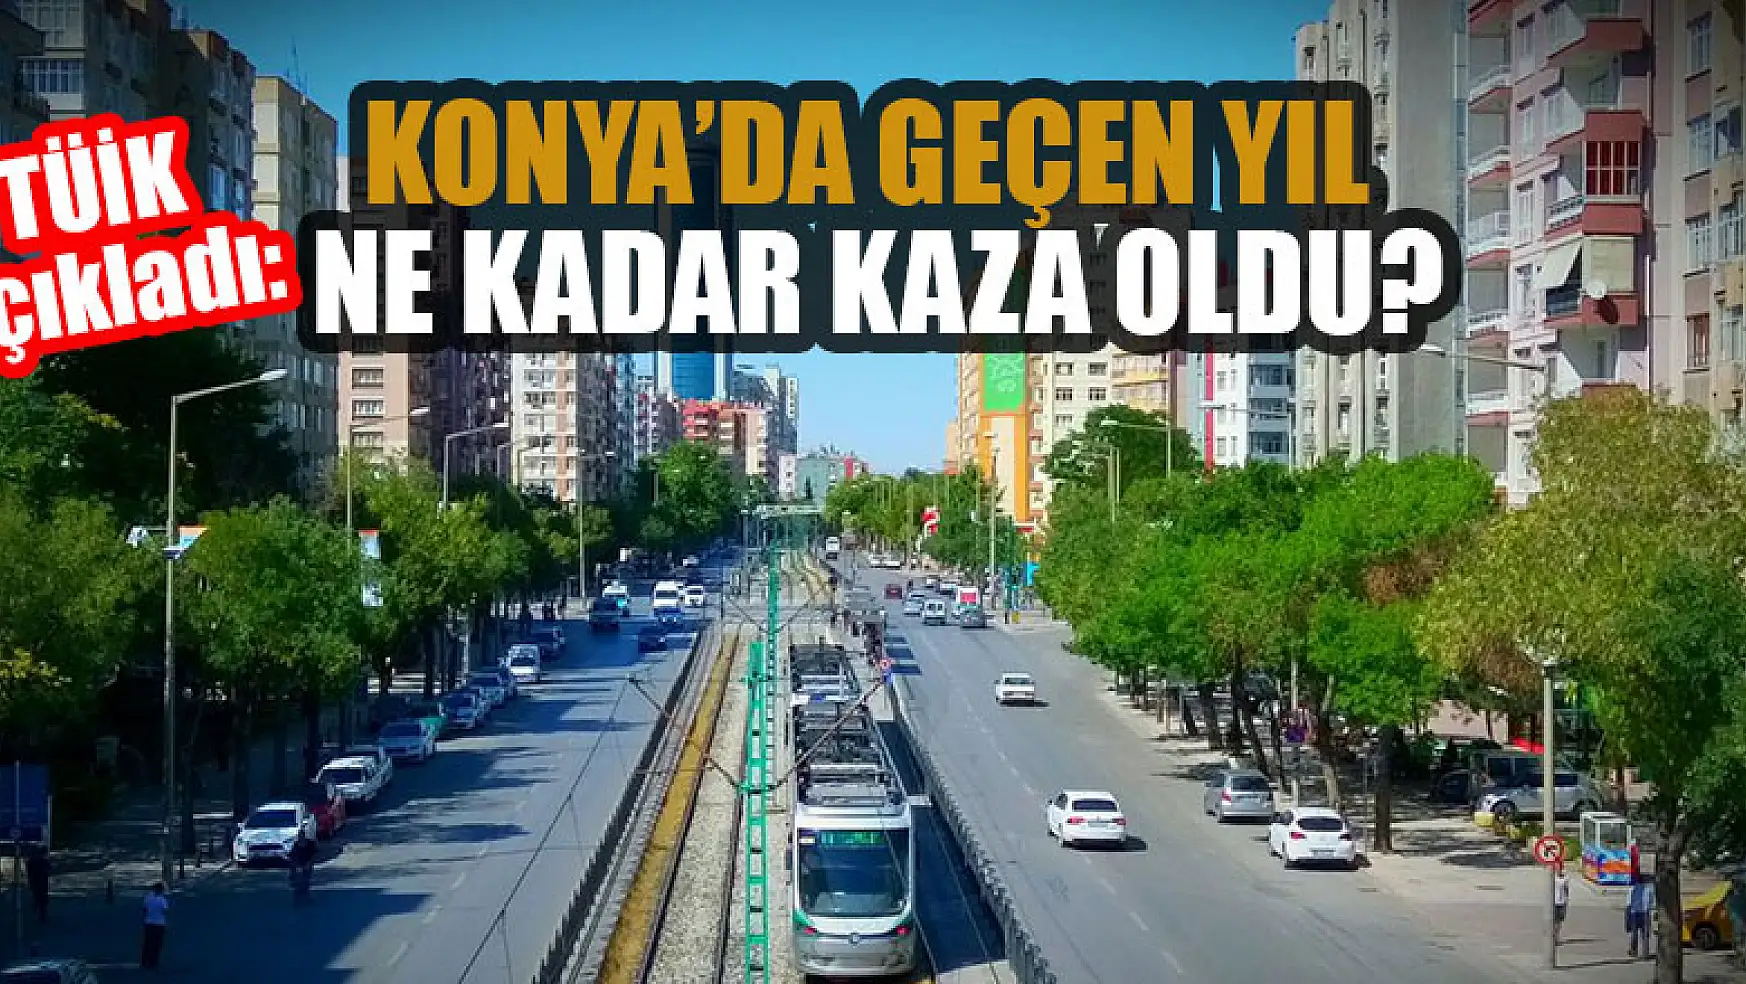 TÜİK açıkladı: Konya'da geçen yıl ne kadar kaza oldu?